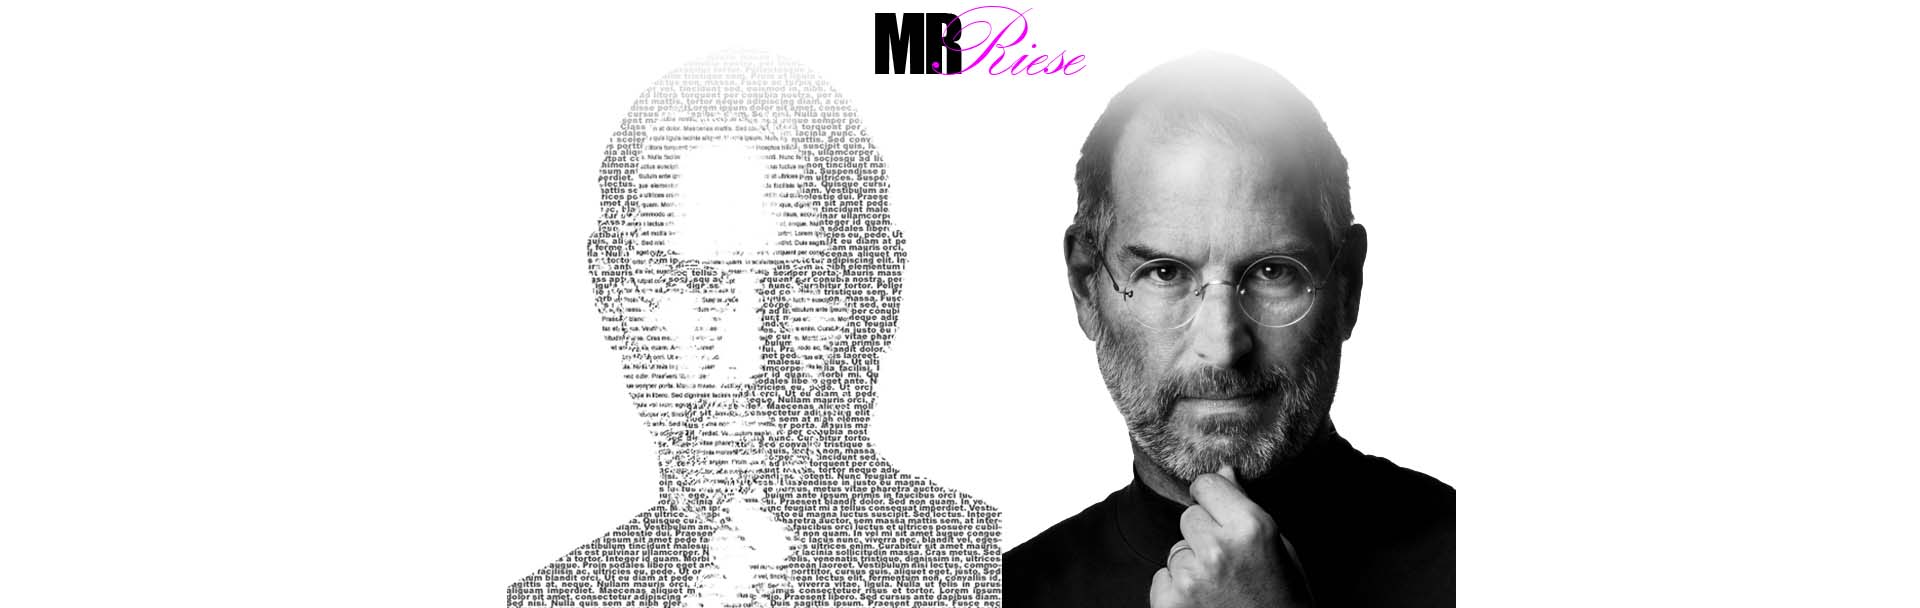 Black & White Text Portrait Photoshop Project | Mr. Riese - image